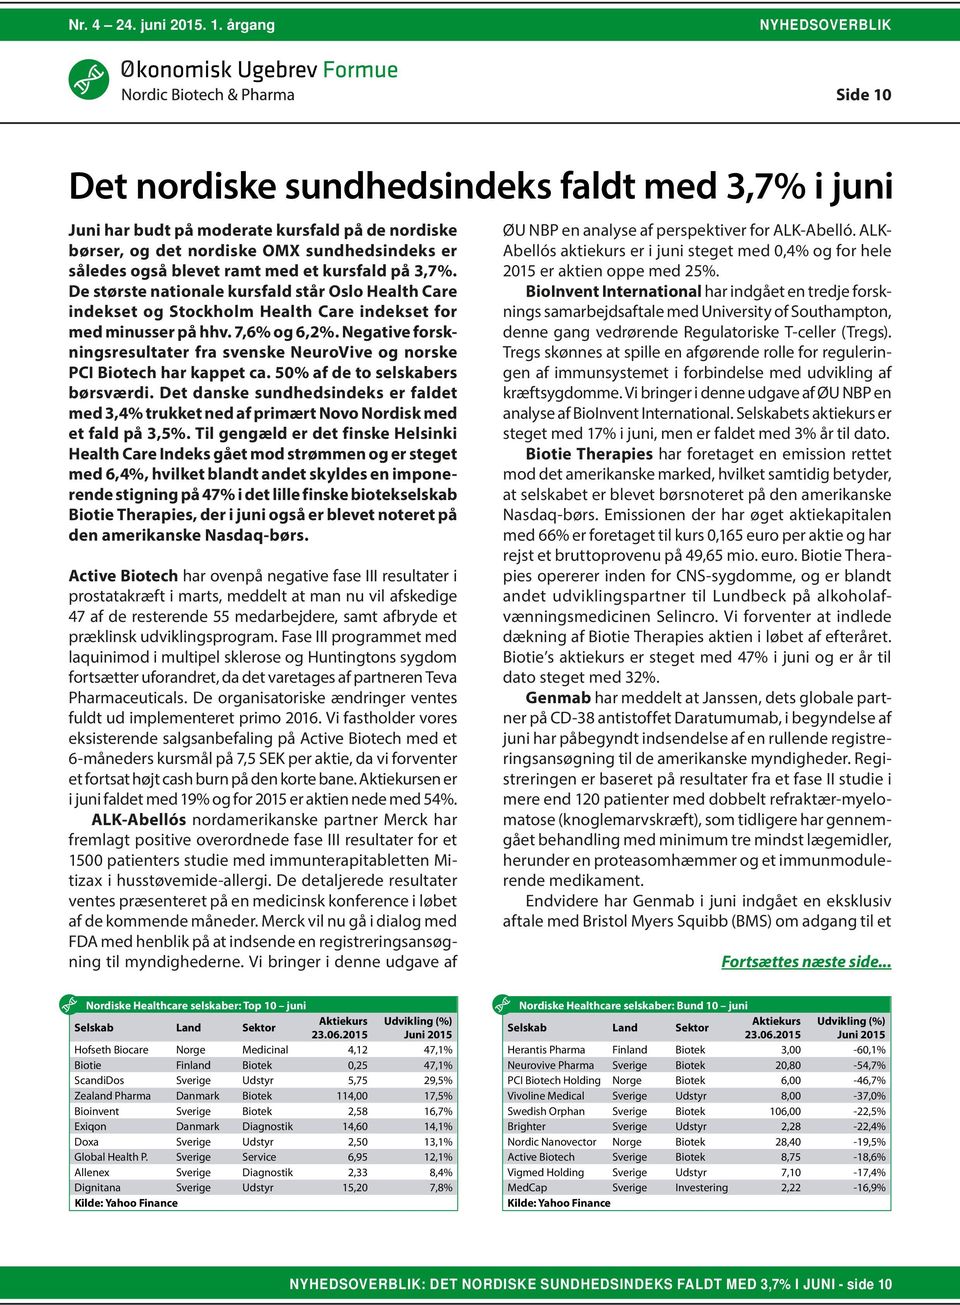 Negative forskningsresultater fra svenske NeuroVive og norske PCI Biotech har kappet ca. 50% af de to selskabers børsværdi.